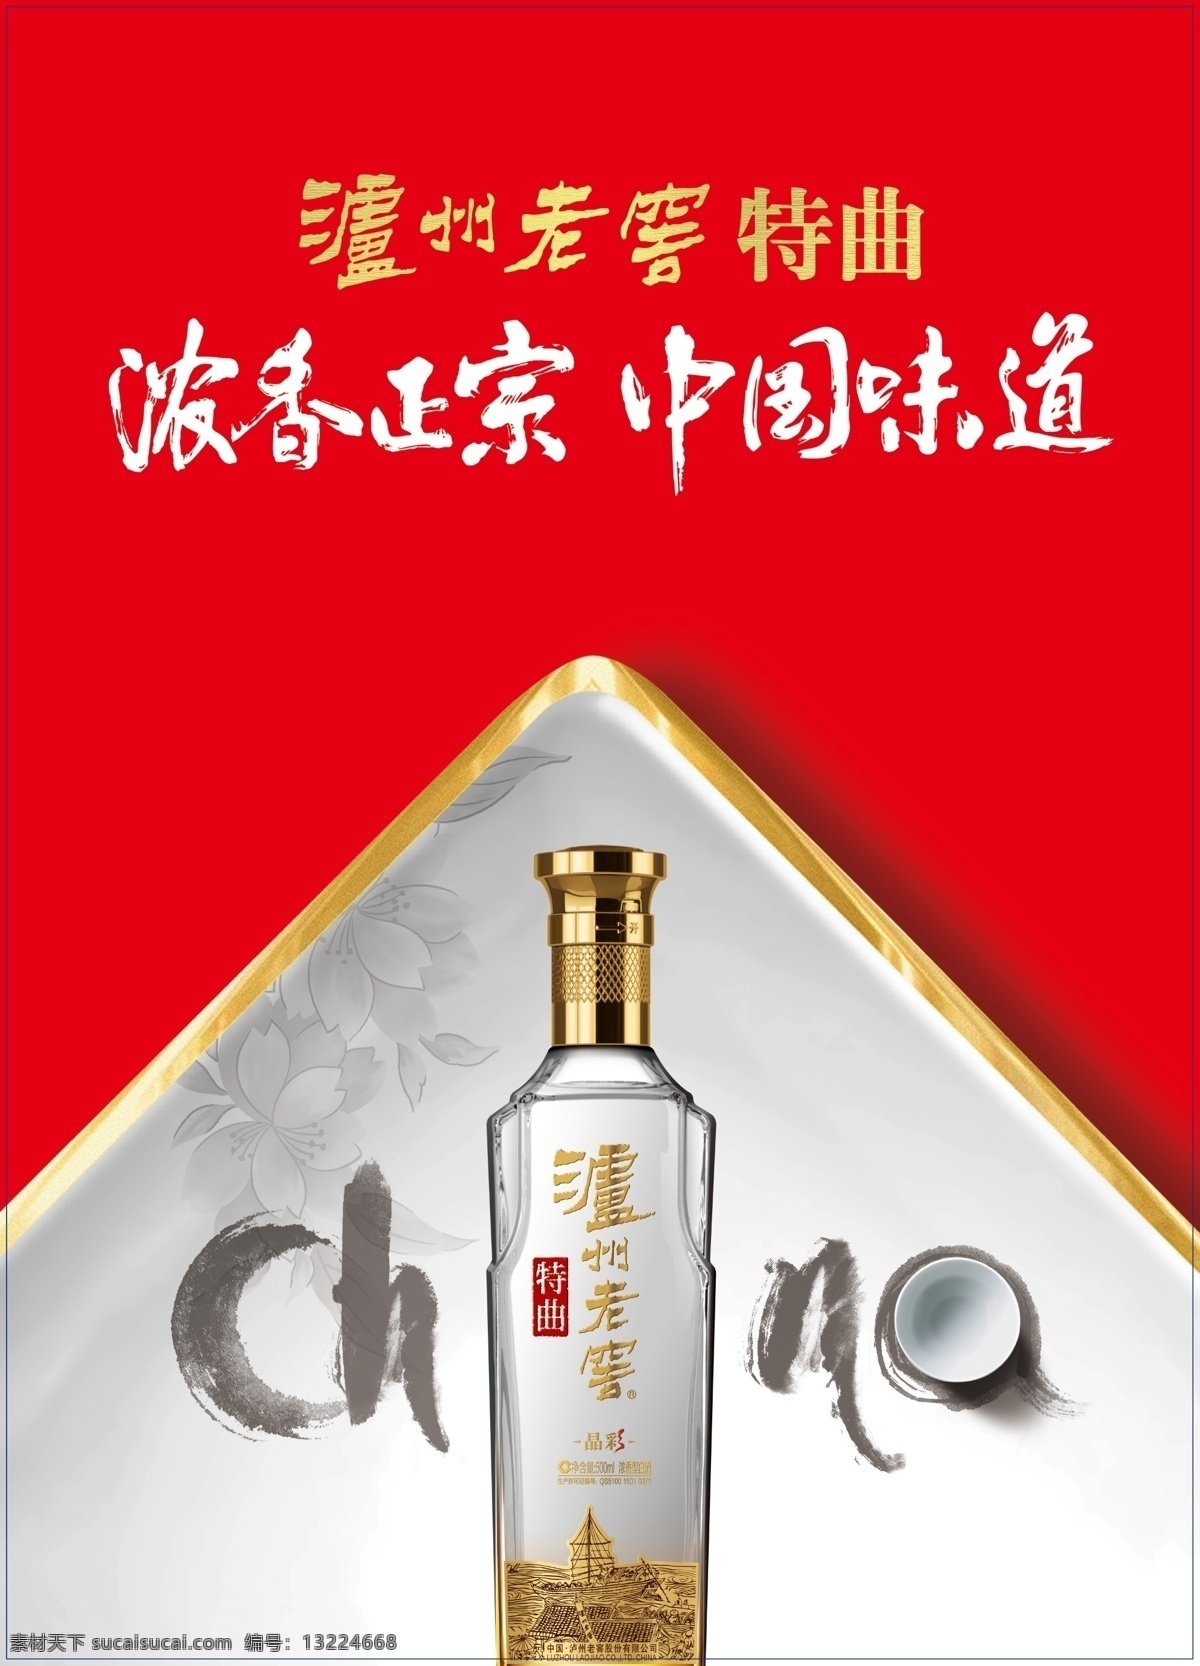 酒水广告 酒水 泸州老窖 酒瓶 古风 特曲 艳红 中国味道